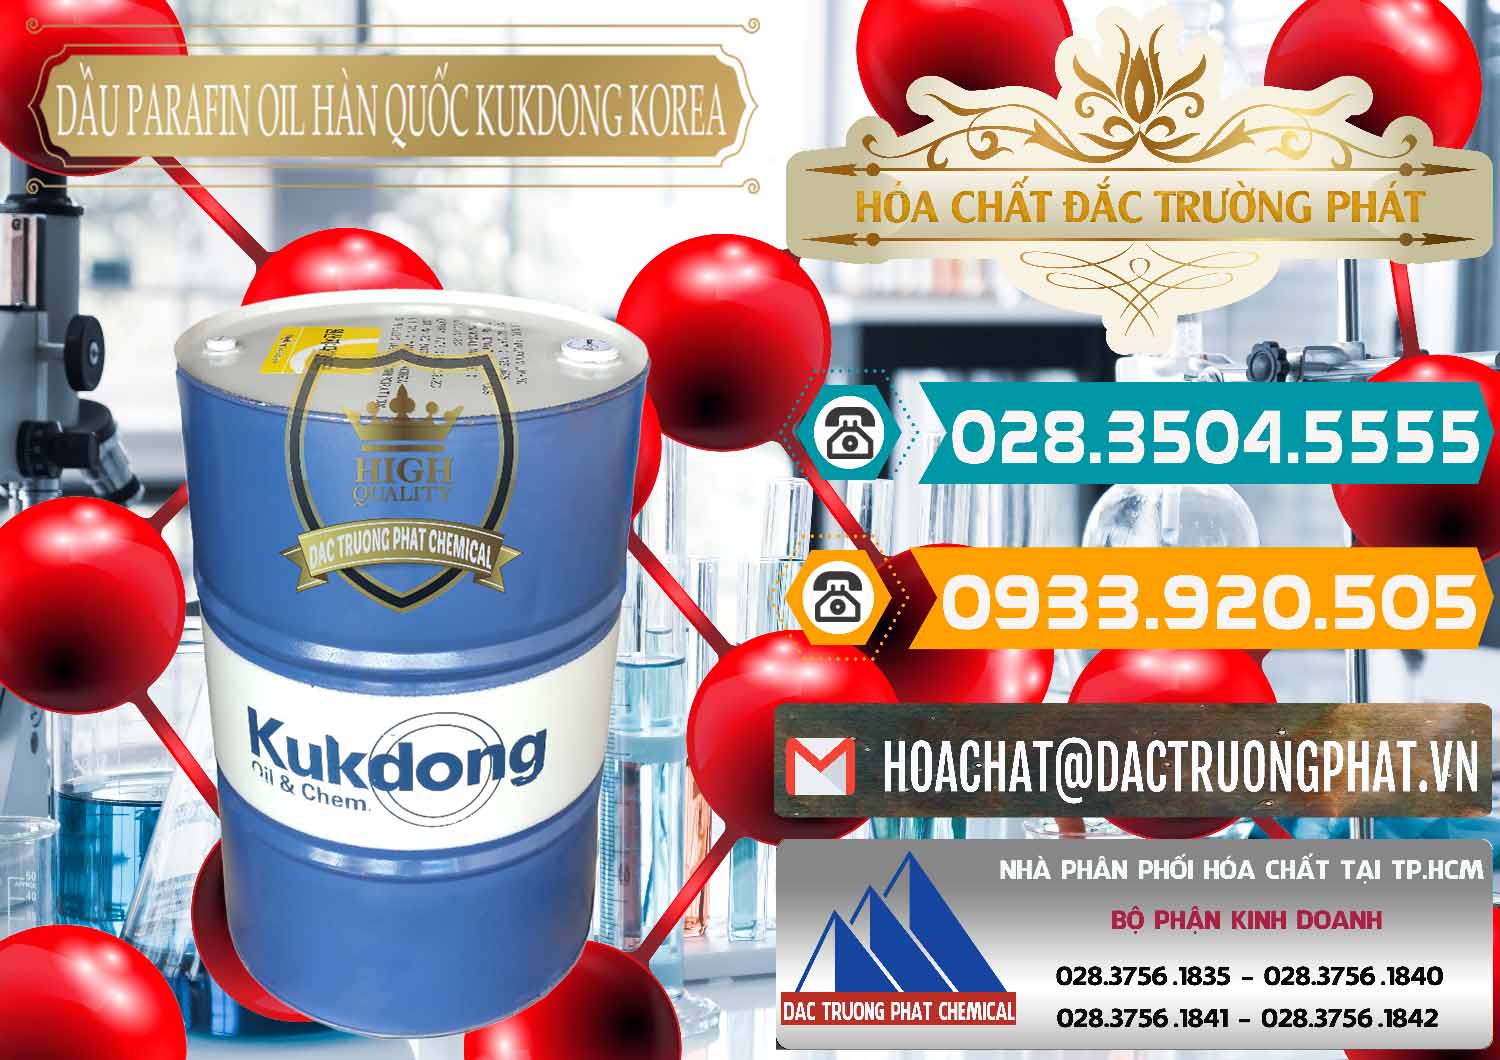 Cty bán _ cung cấp Dầu Parafin Oil Hàn Quốc Korea Kukdong - 0060 - Cty cung ứng & phân phối hóa chất tại TP.HCM - congtyhoachat.vn